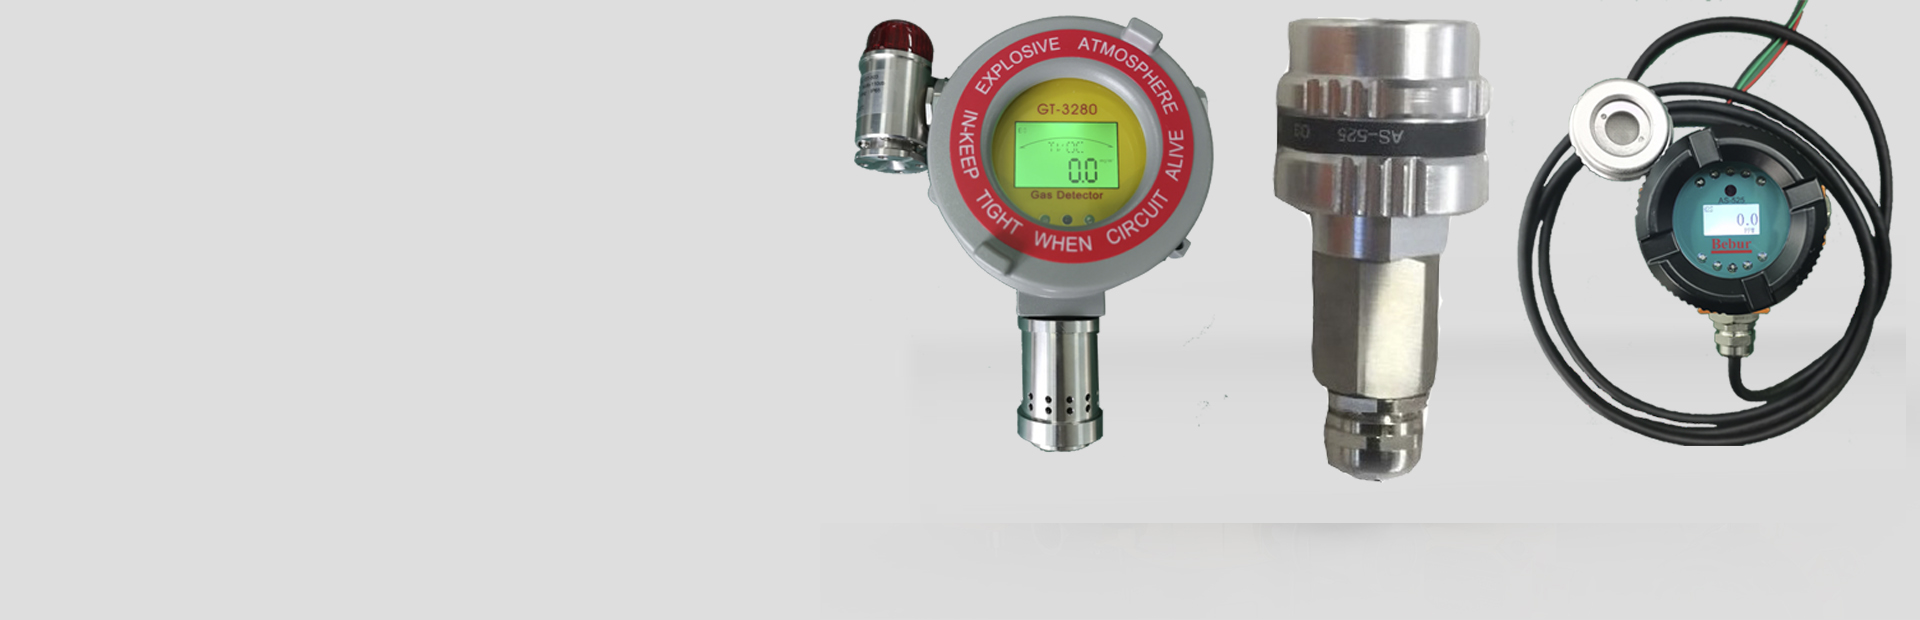 UV254水质分析仪系列产品